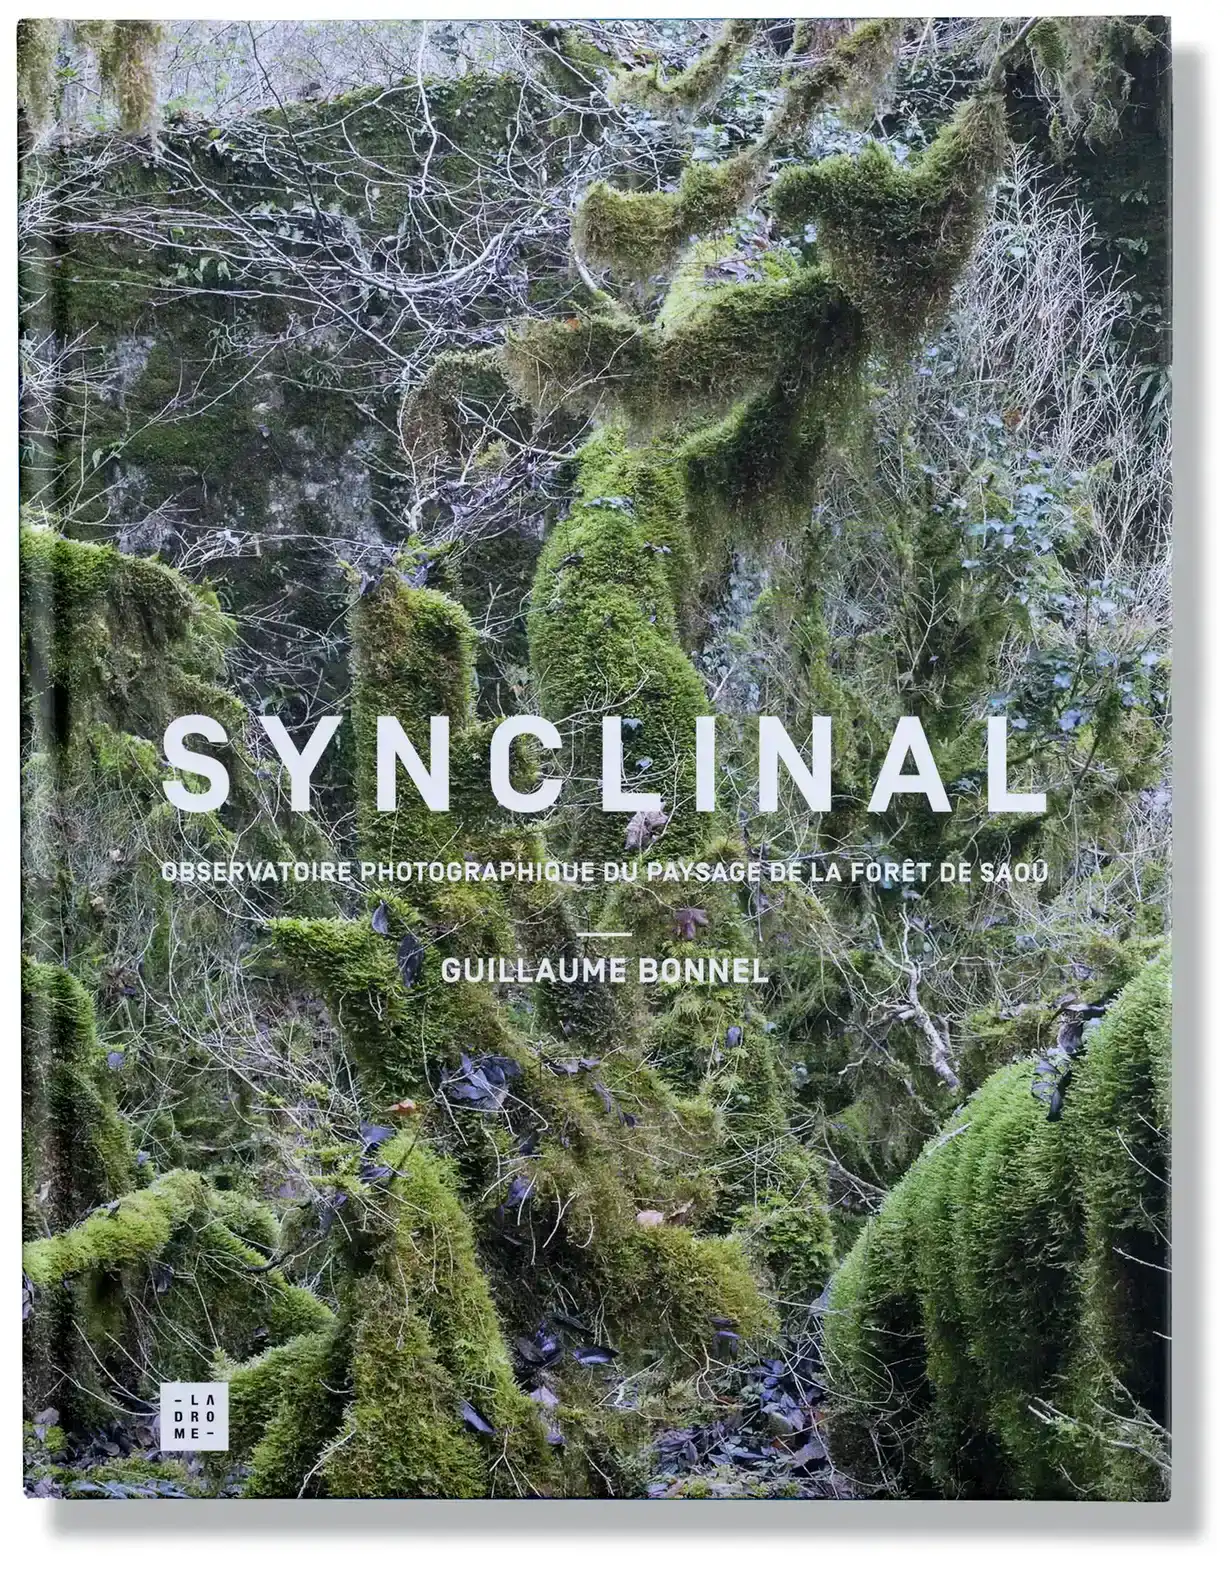 Synclinal, observatoire photographique de la forêt de Saoû, Guillaume Bonnel